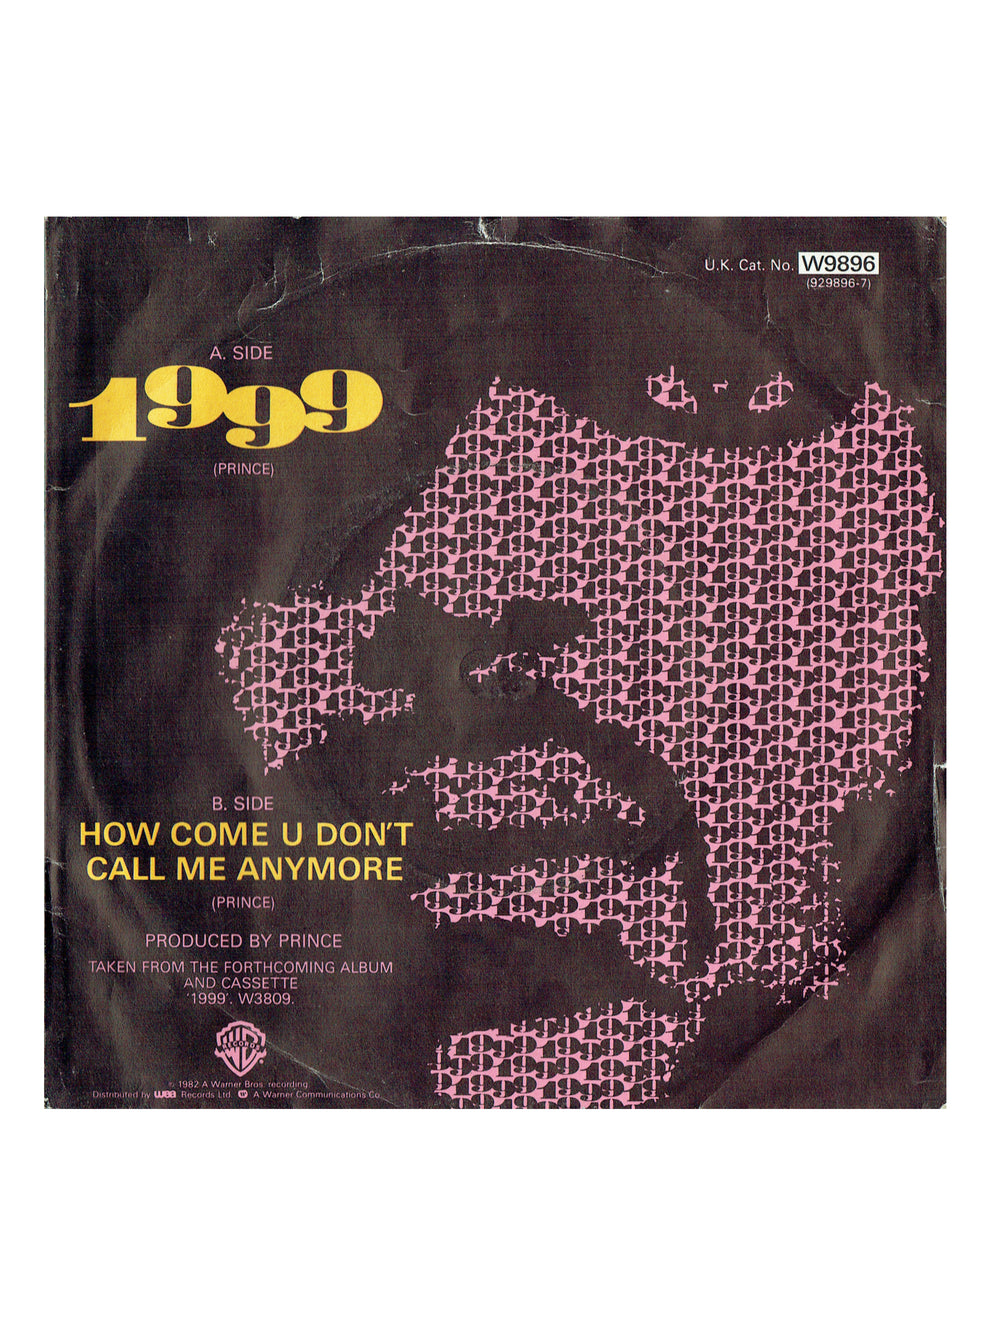 Prince – 1999 Vinyl 7 " Single UK Preloved: 1982